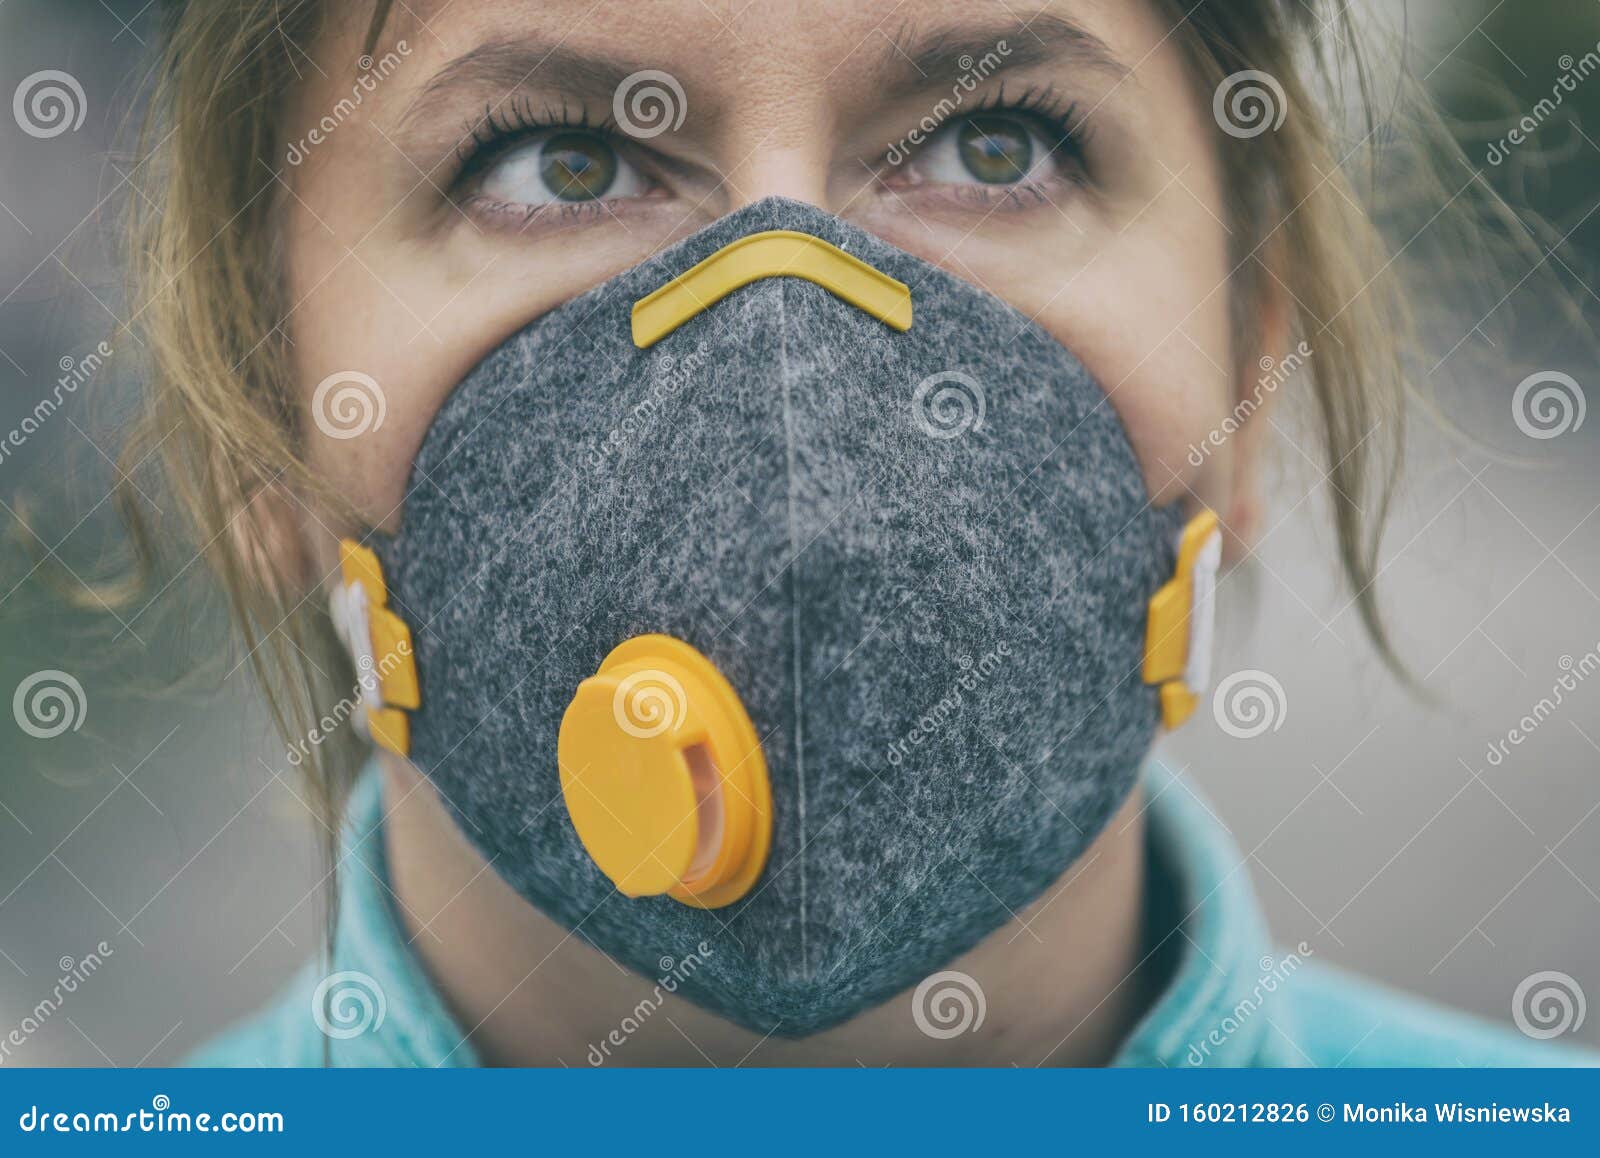 masque anti pollution sourire